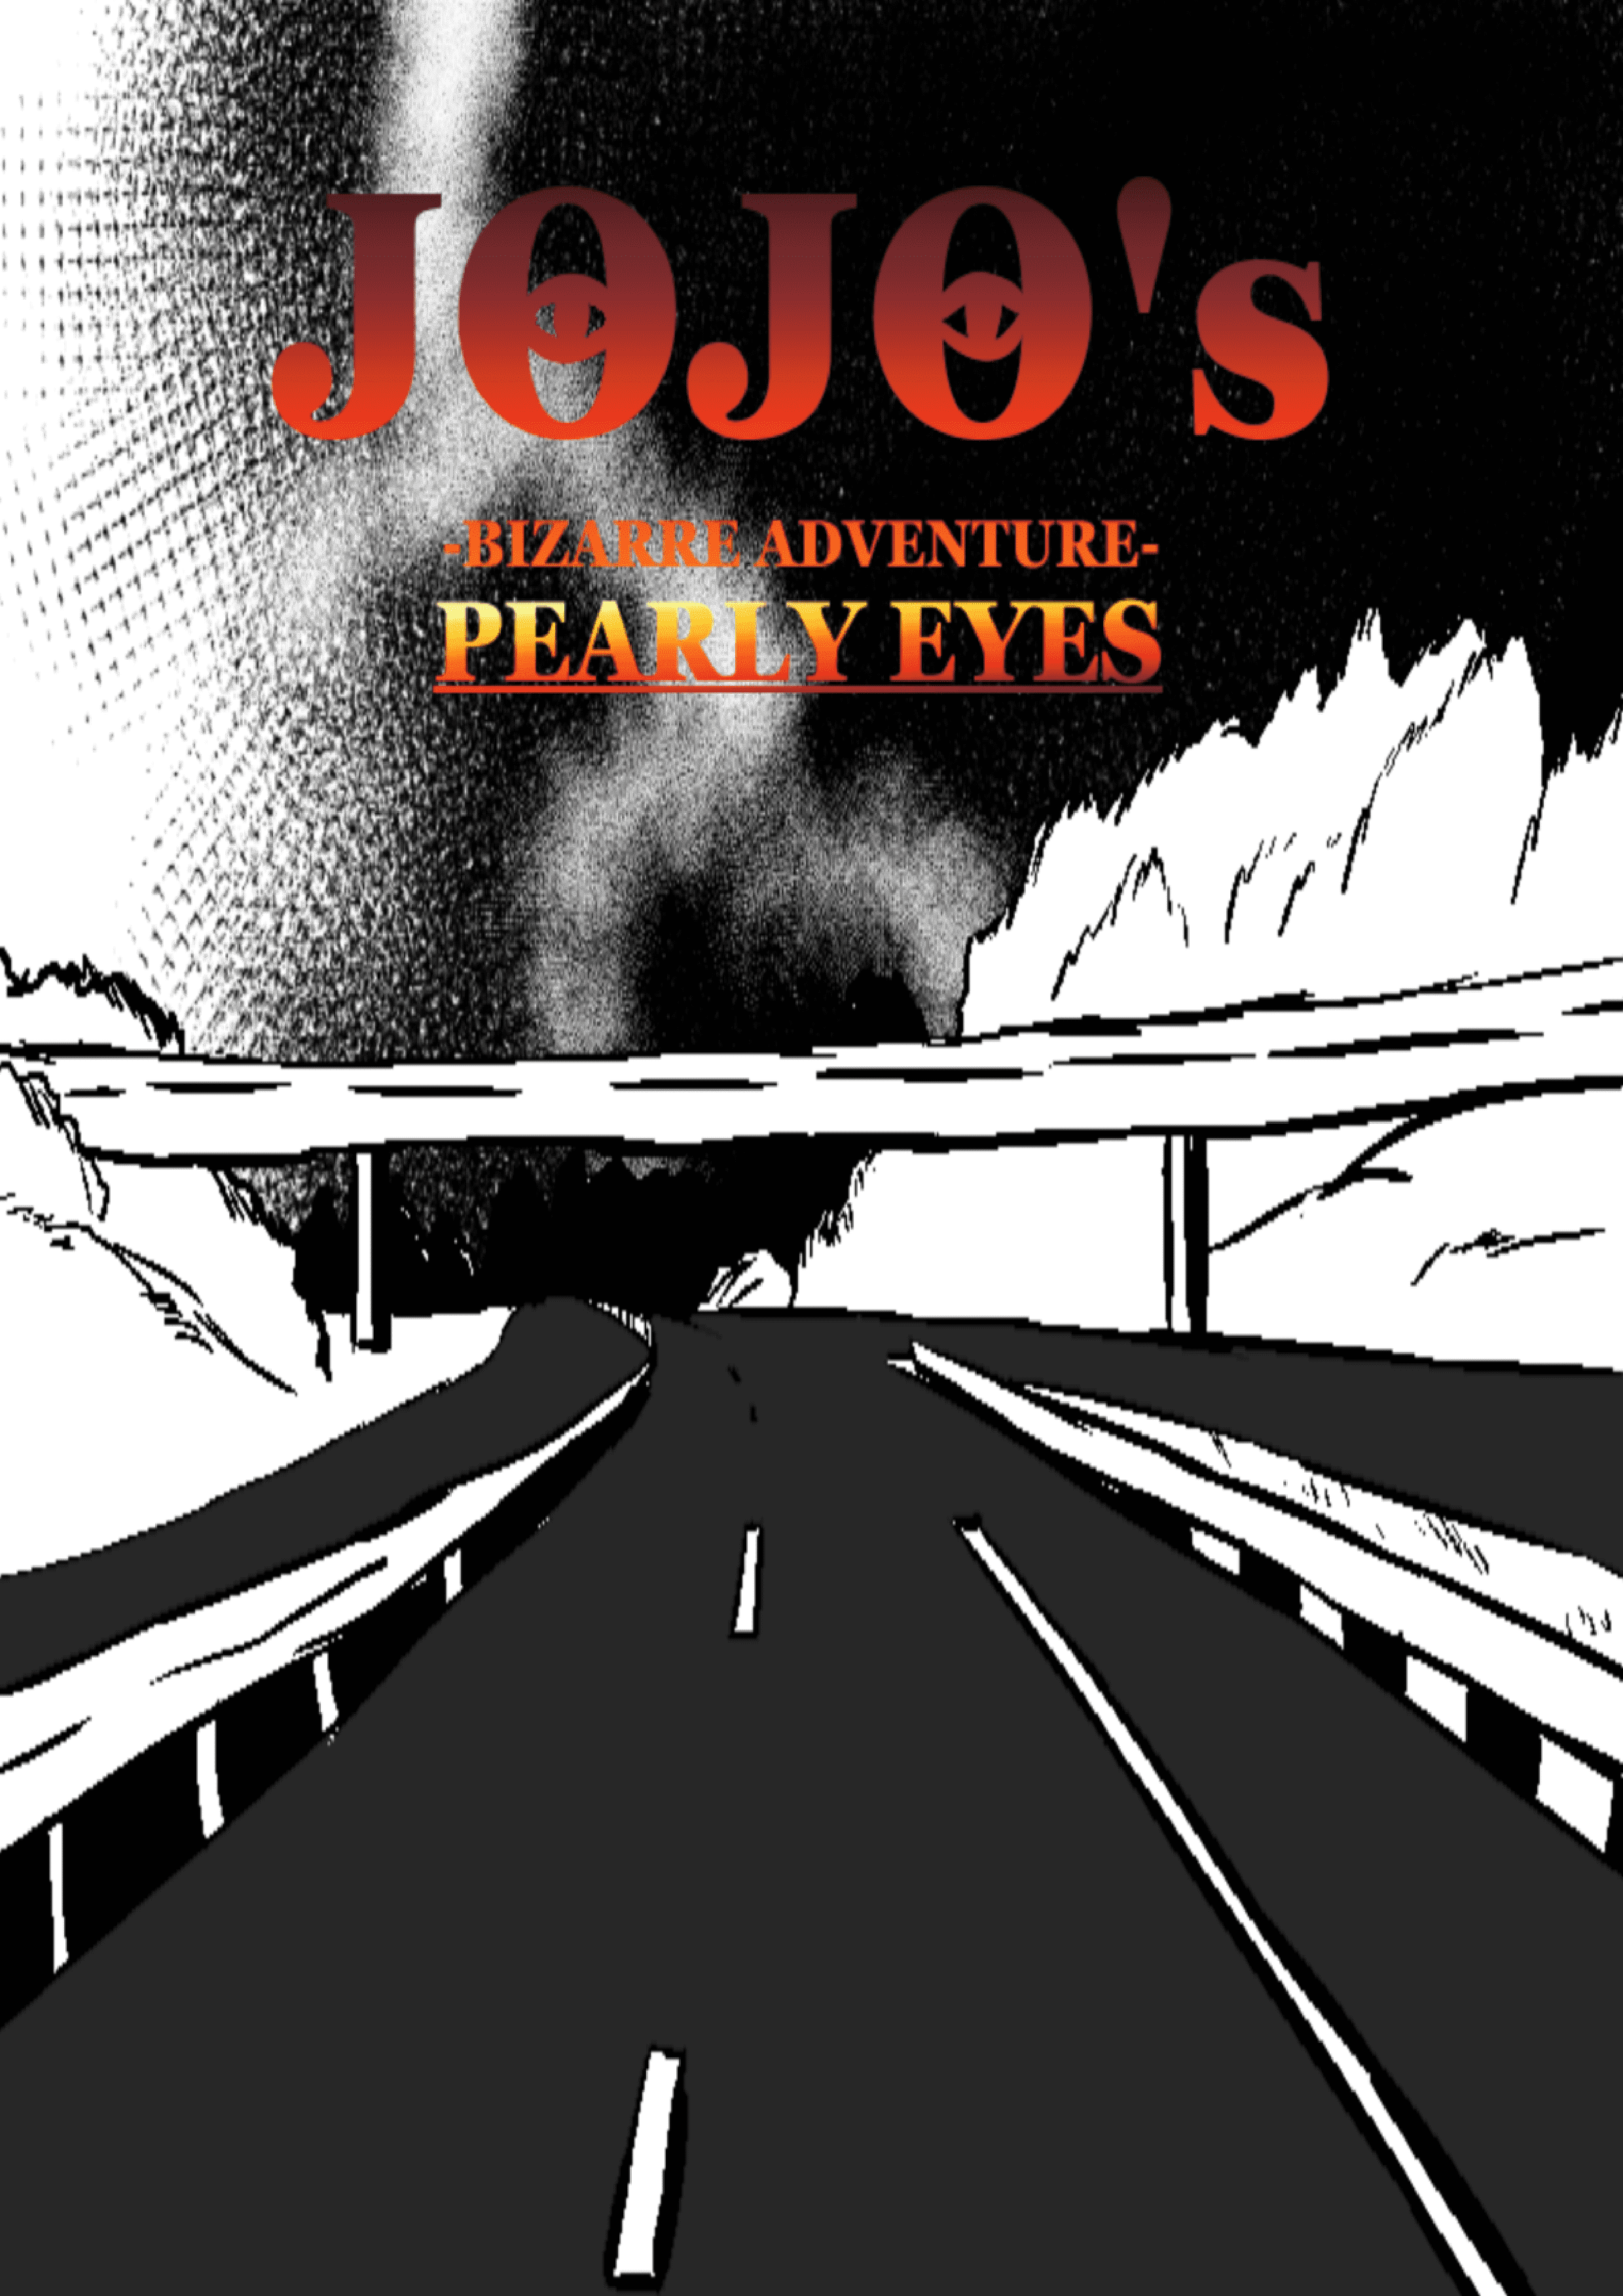 JoJo's Bizarre Adventure-Pearly Eyes thumbnail